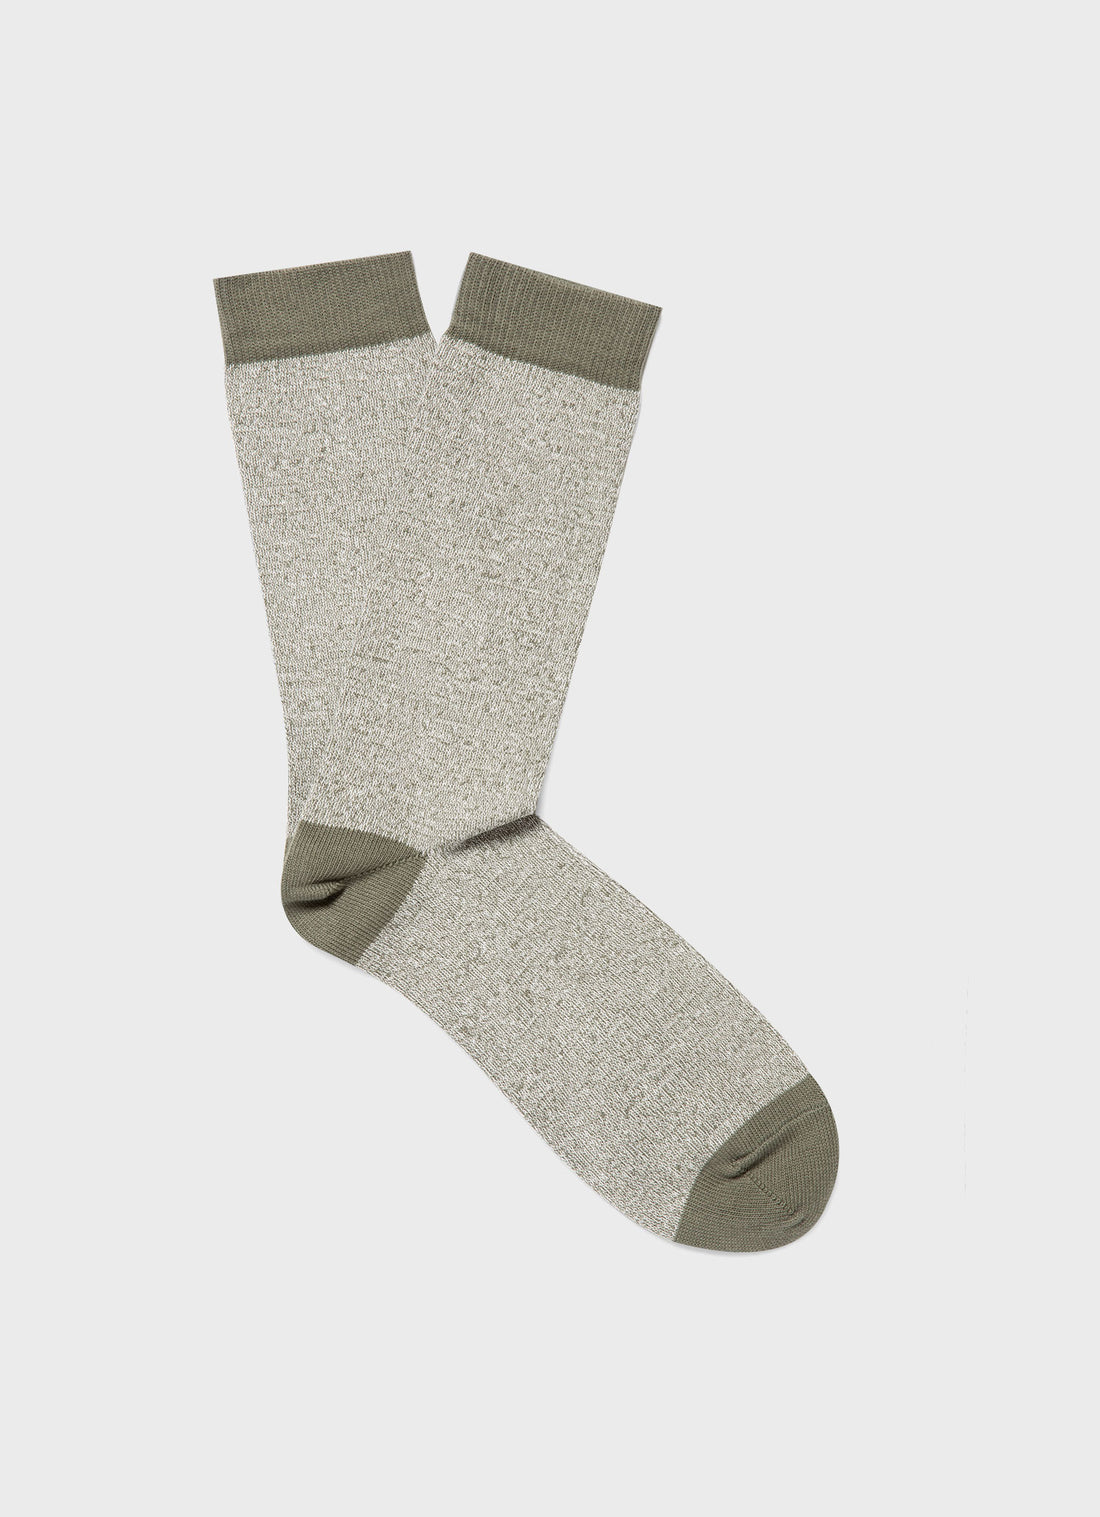 Men's Cotton Socks in Pale Khaki Twist